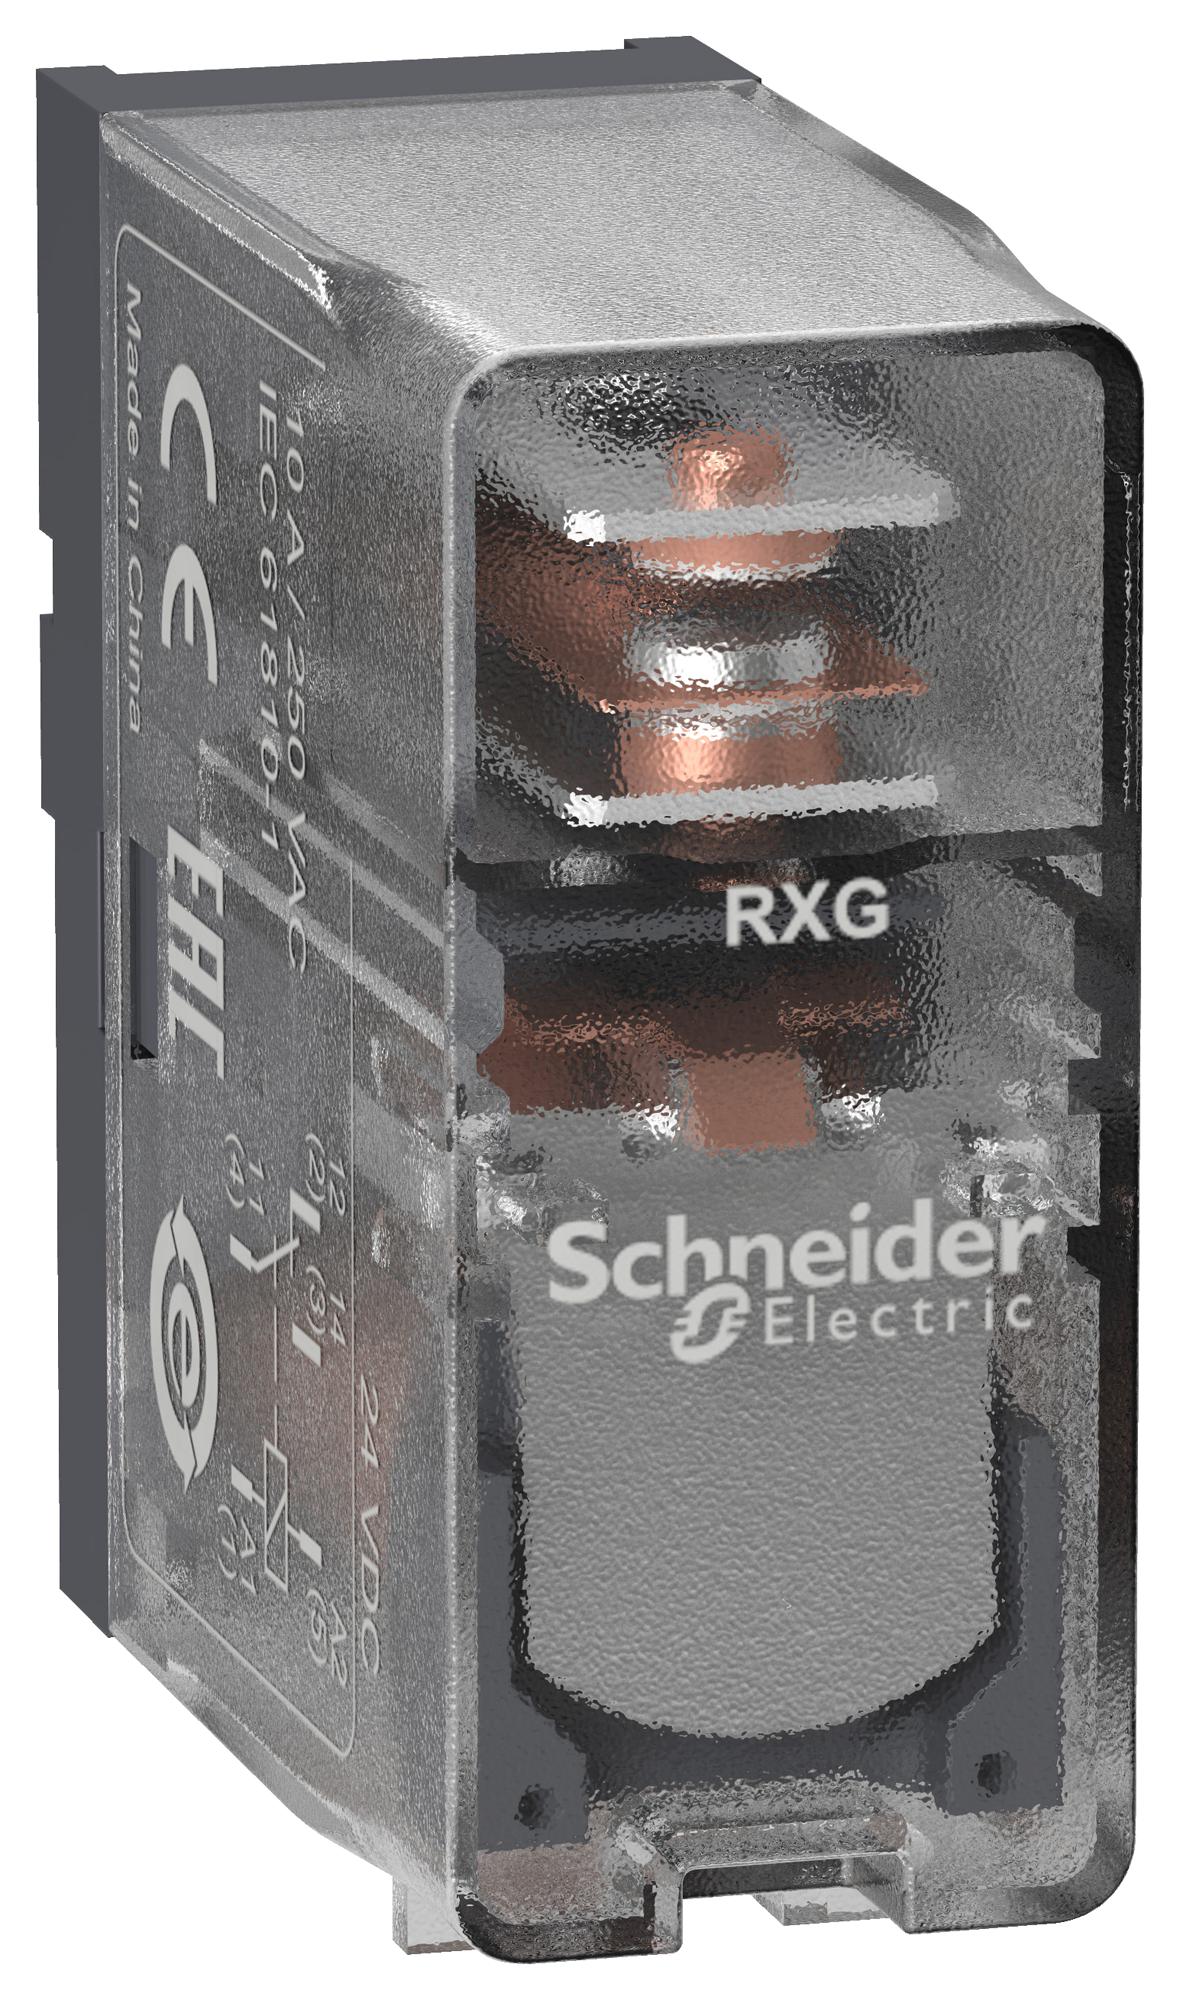 RXG15BD POWER RELAY, SPDT, 10A, 250VAC SCHNEIDER ELECTRIC